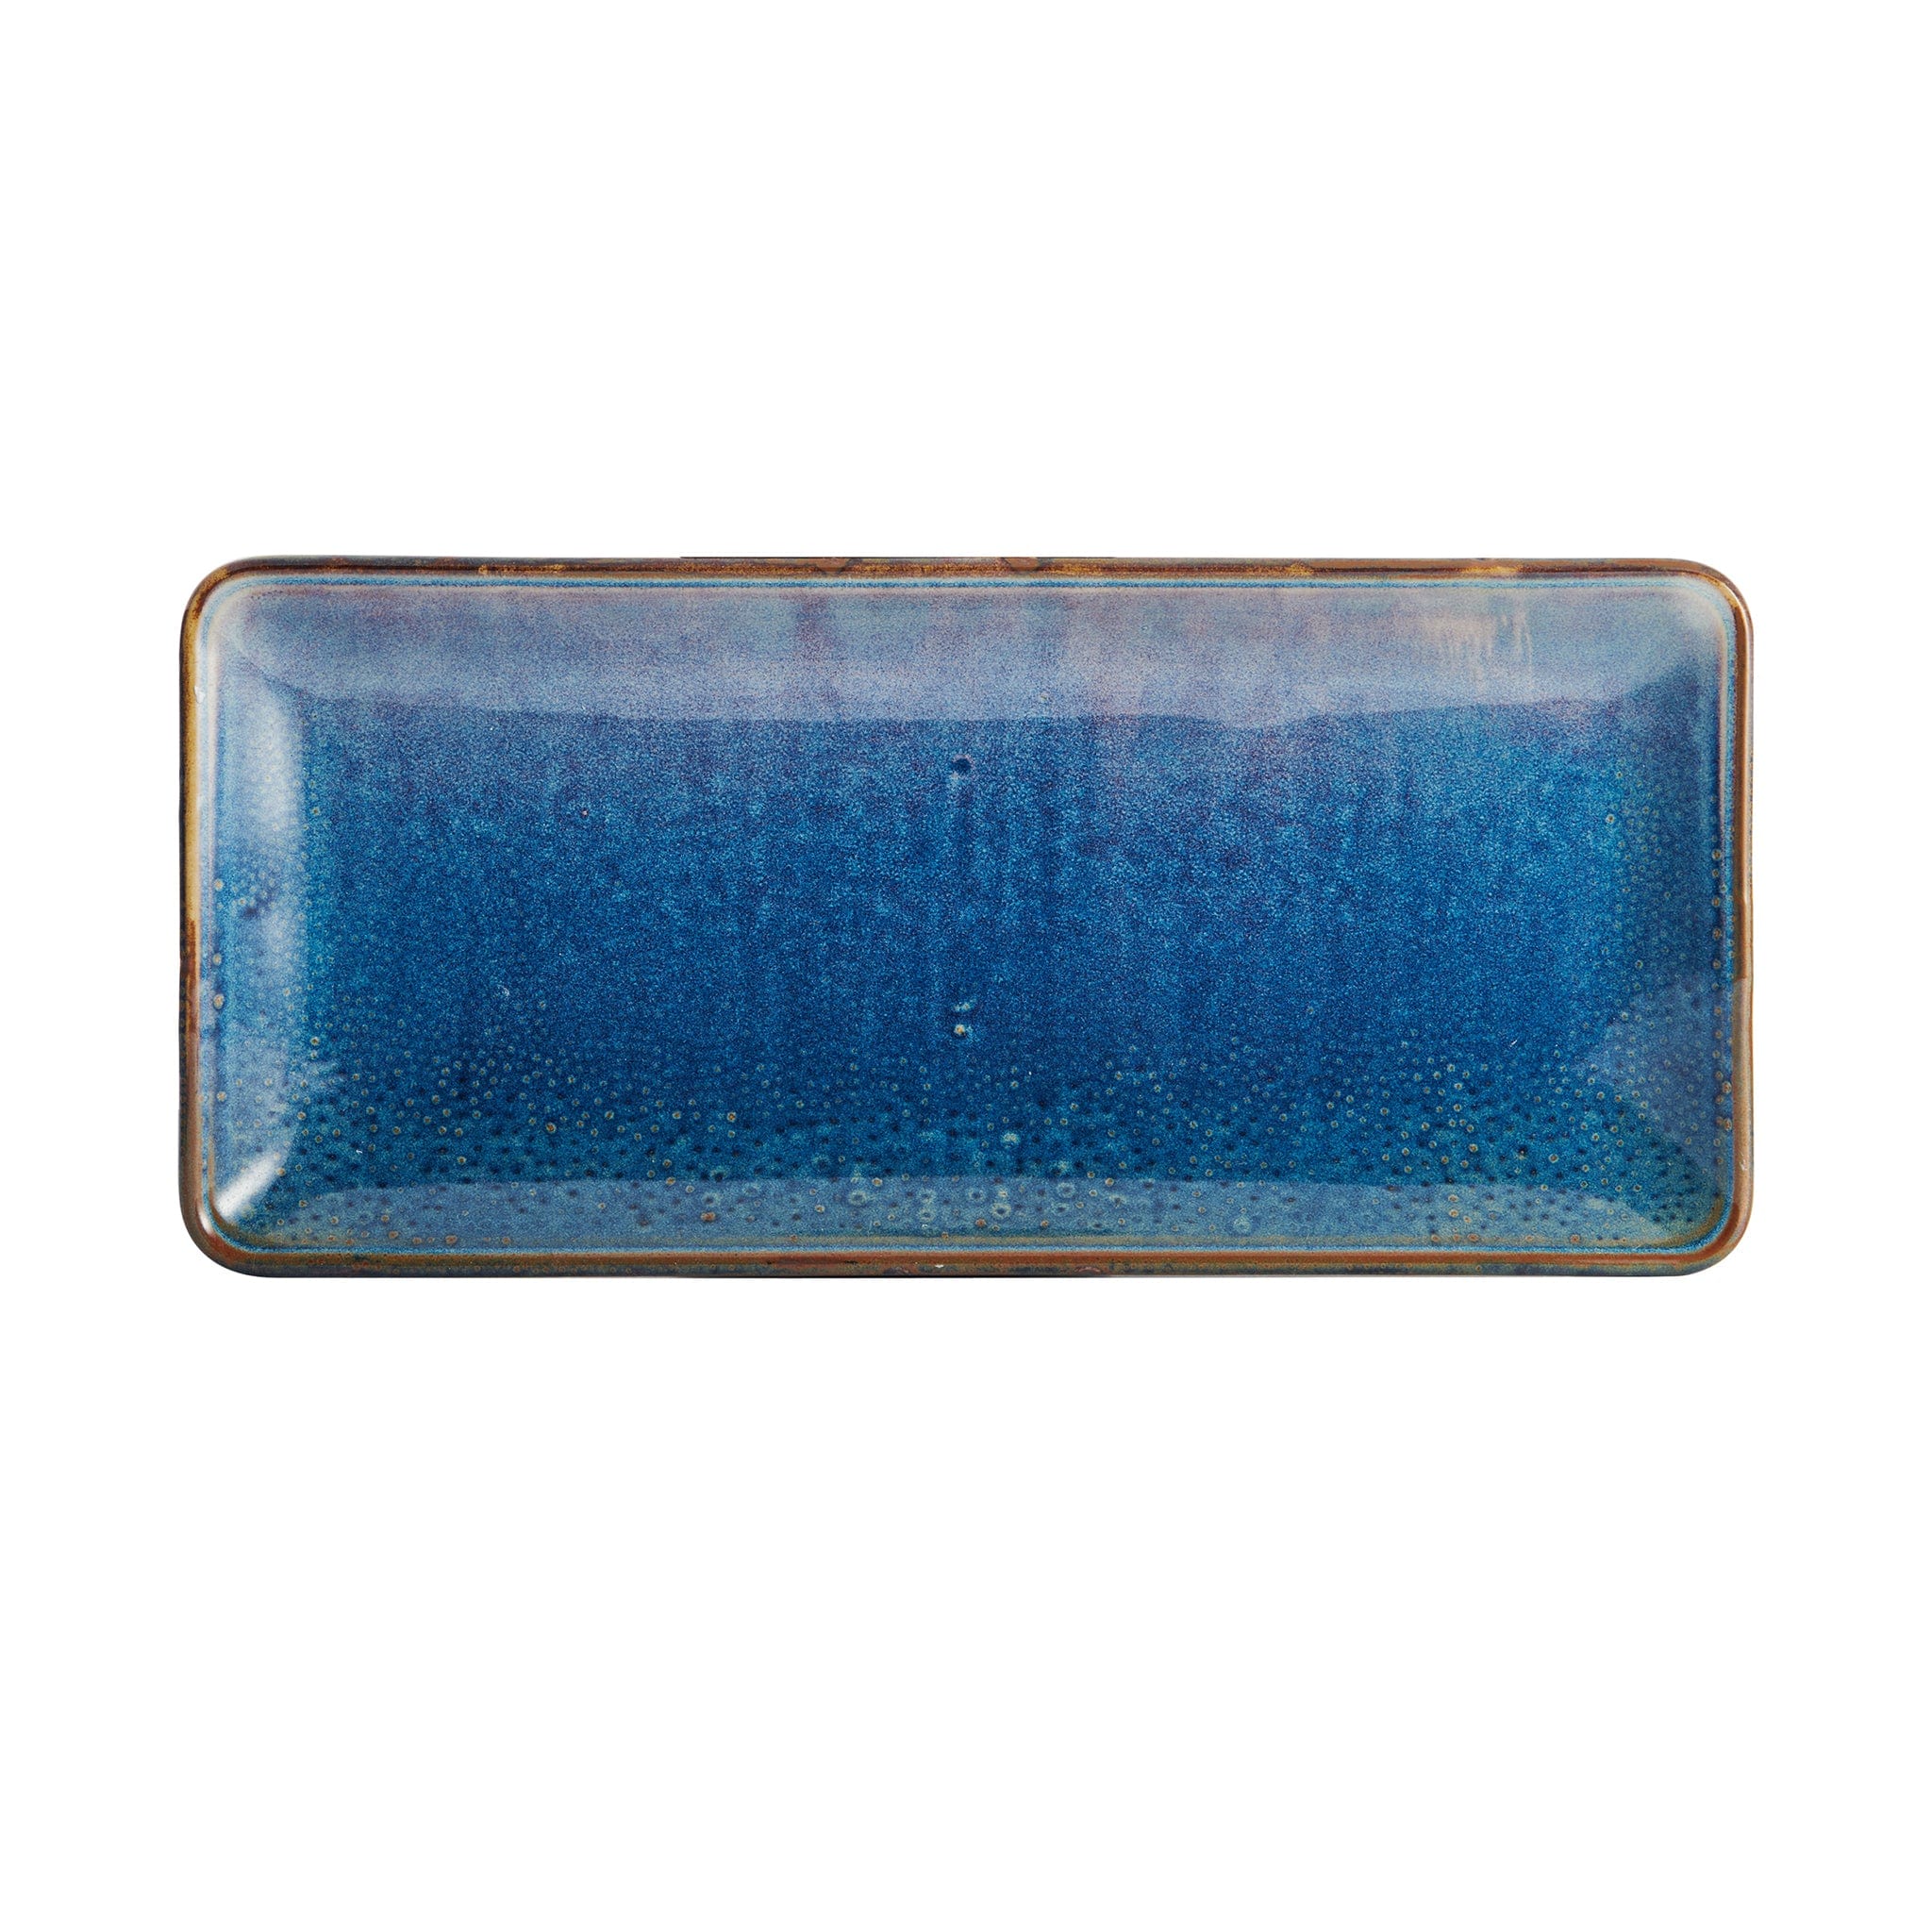 Starlit Porcelain Rectangular Platter 14x6" Blue